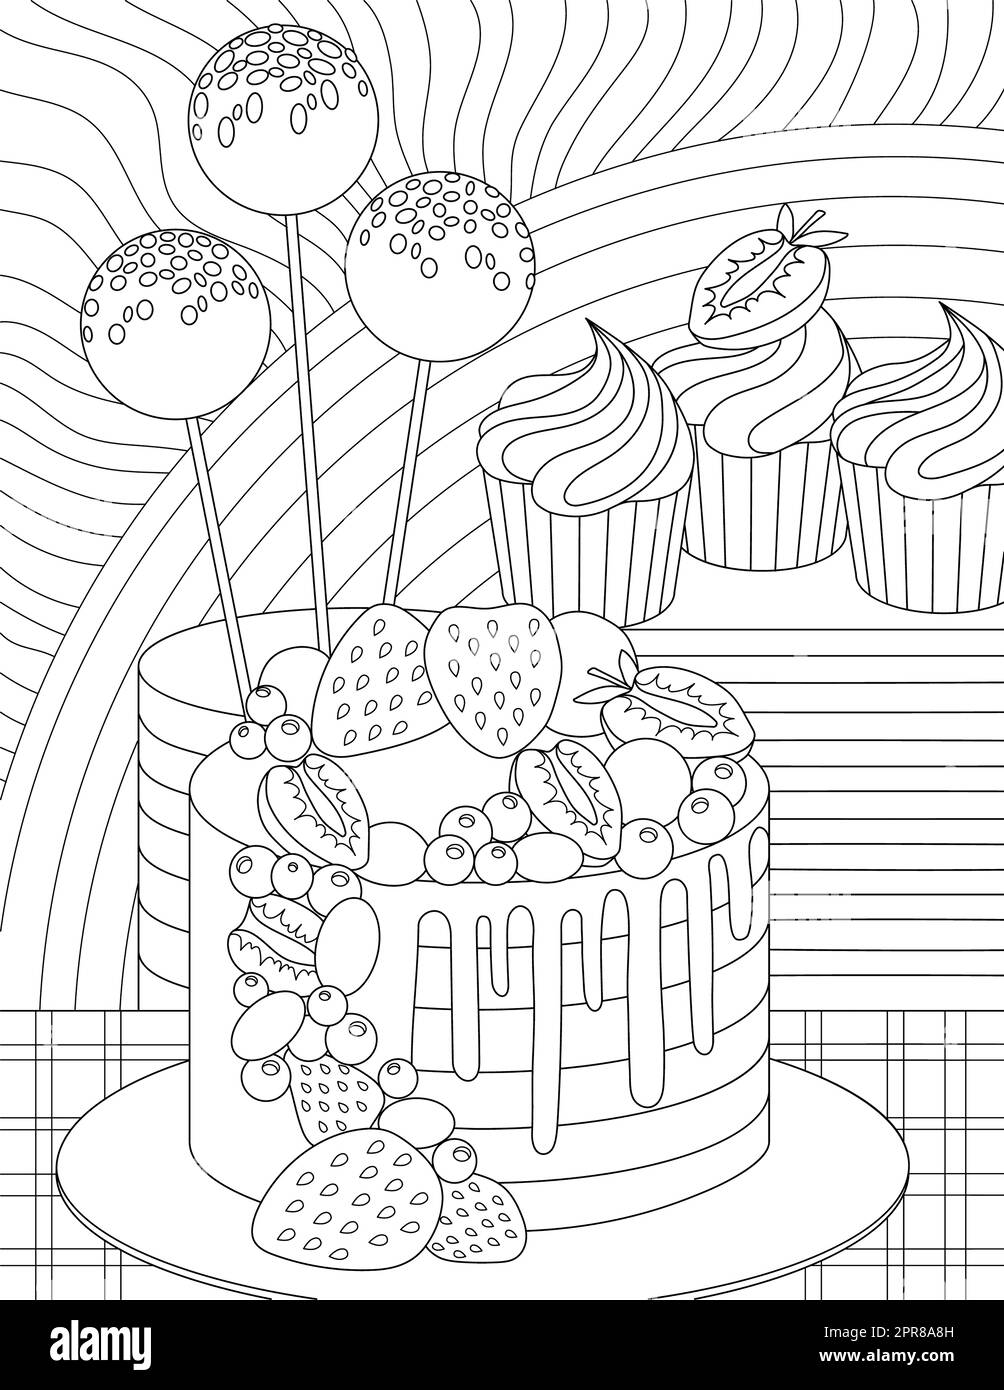 Dibujo de Pastel de cumpleaños para colorear